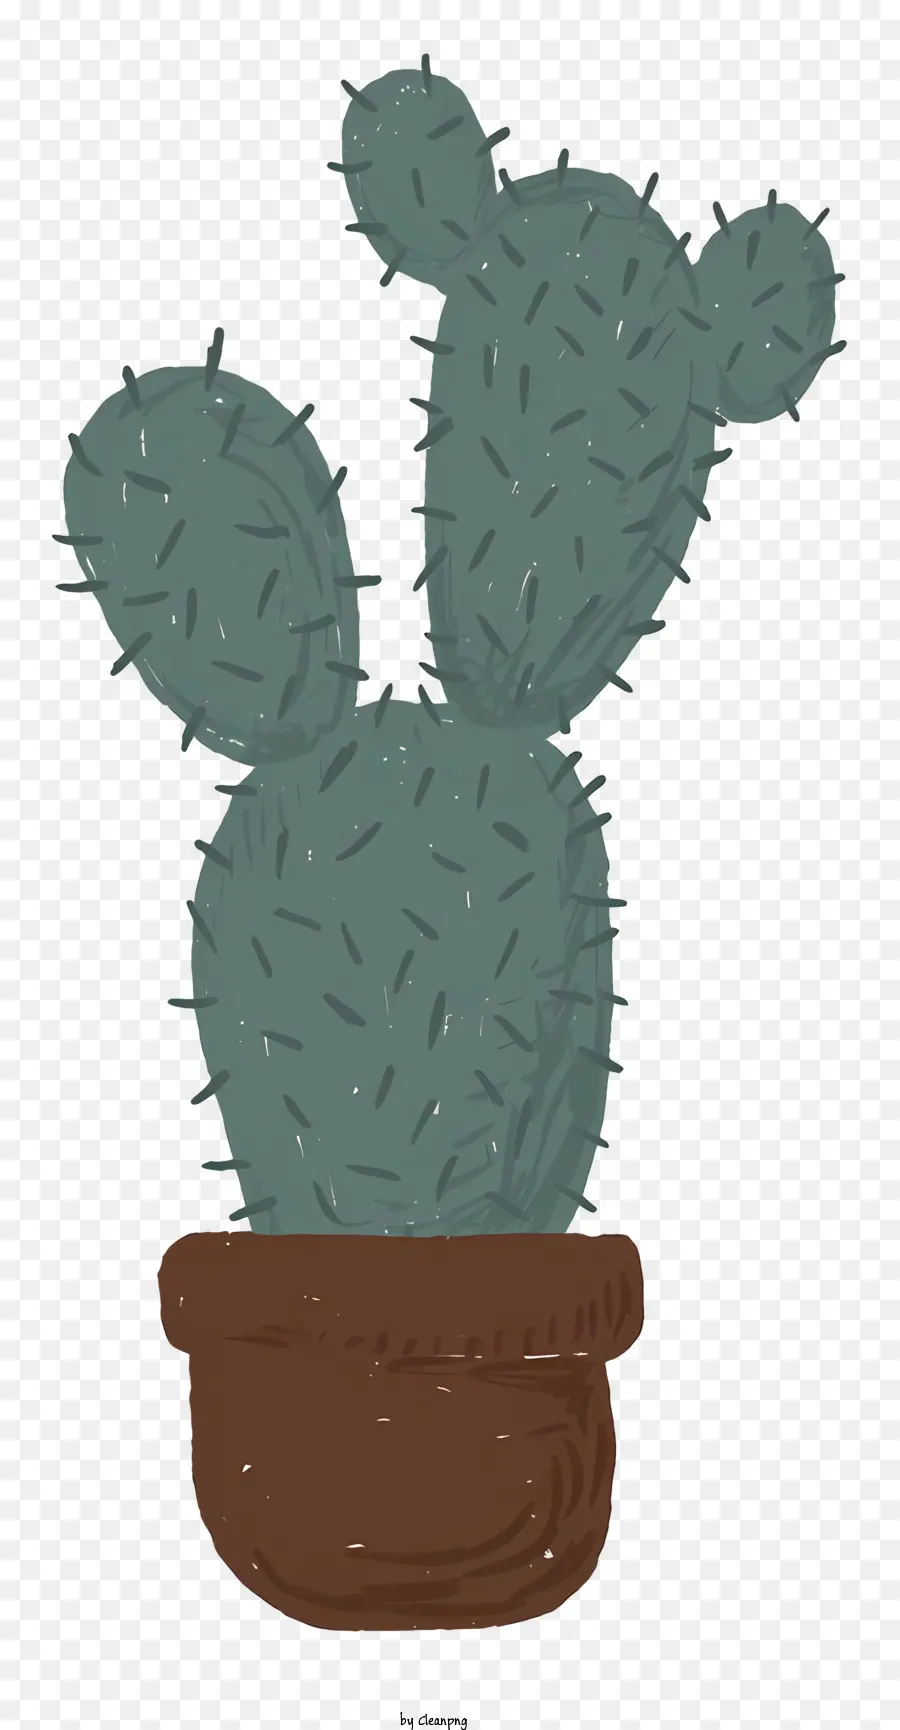 Piccola pianta di cactus Cactus in pentola a tre punte di cactus arrotondata Cactus Green Cactus Plant - Disegno a matita blu di piccolo cactus in pentola